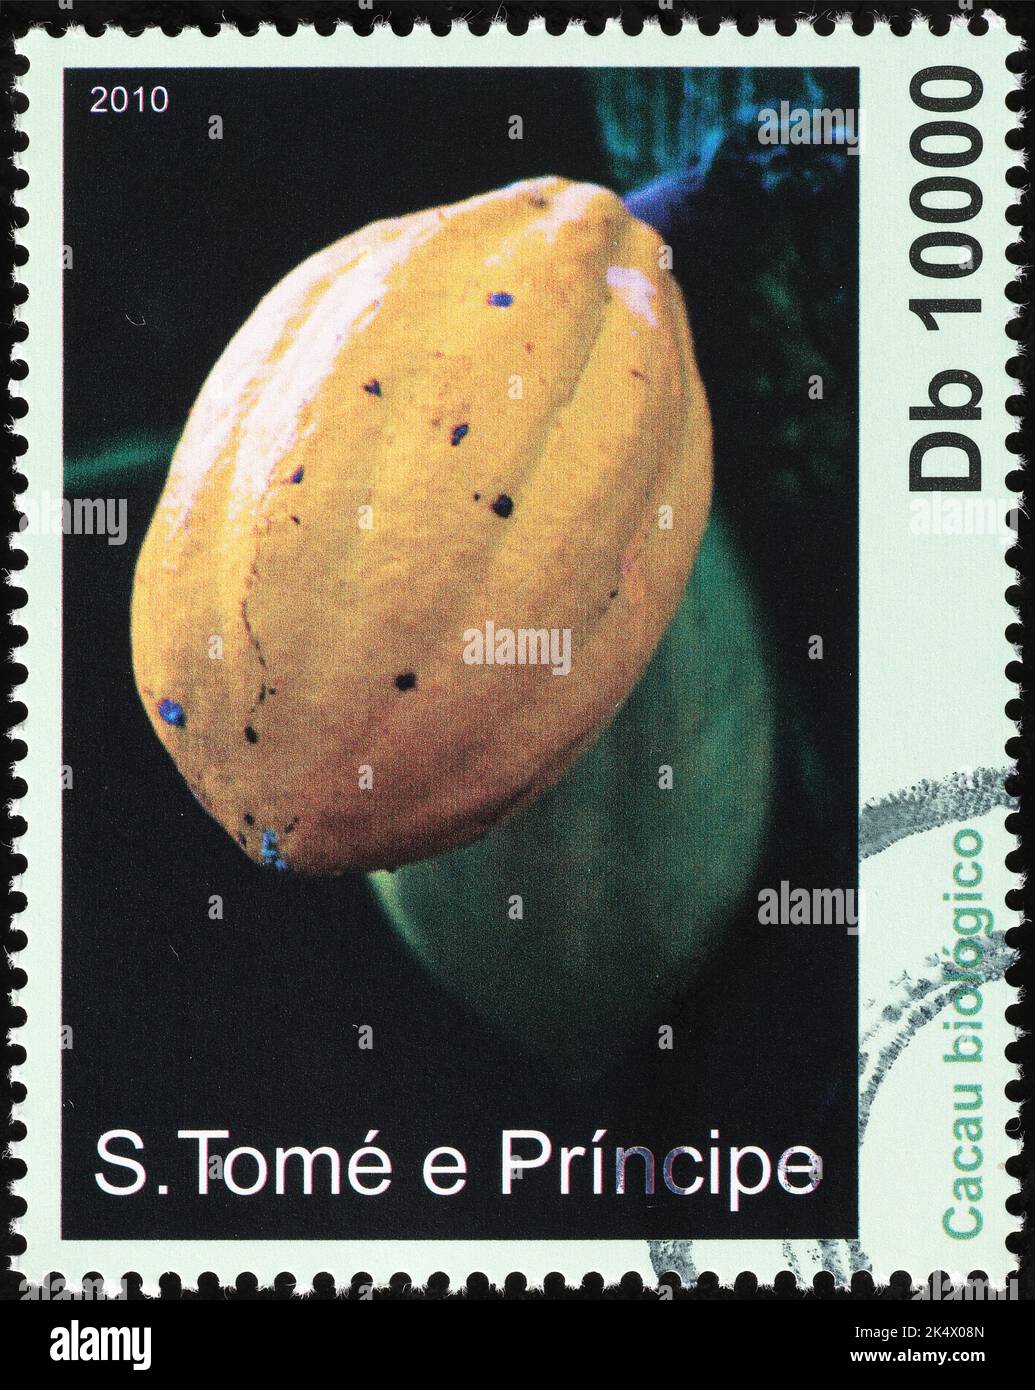 Gousse de cacao mûre sur timbre-poste africain Banque D'Images